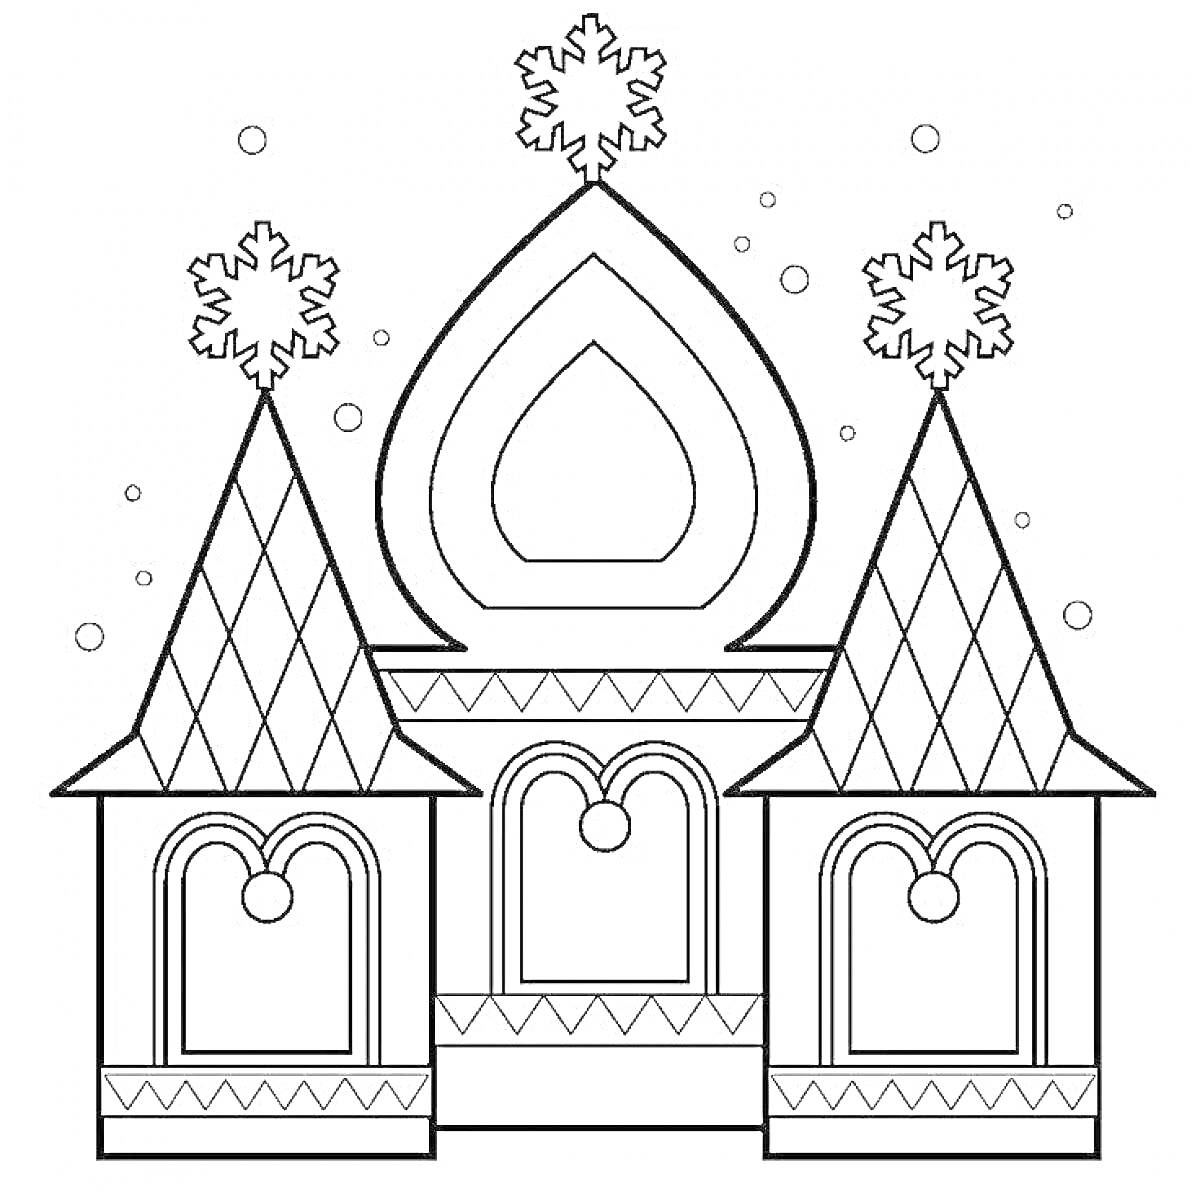 Раскраска Сказочный дворец с двумя башнями, центральным куполом и снежинками